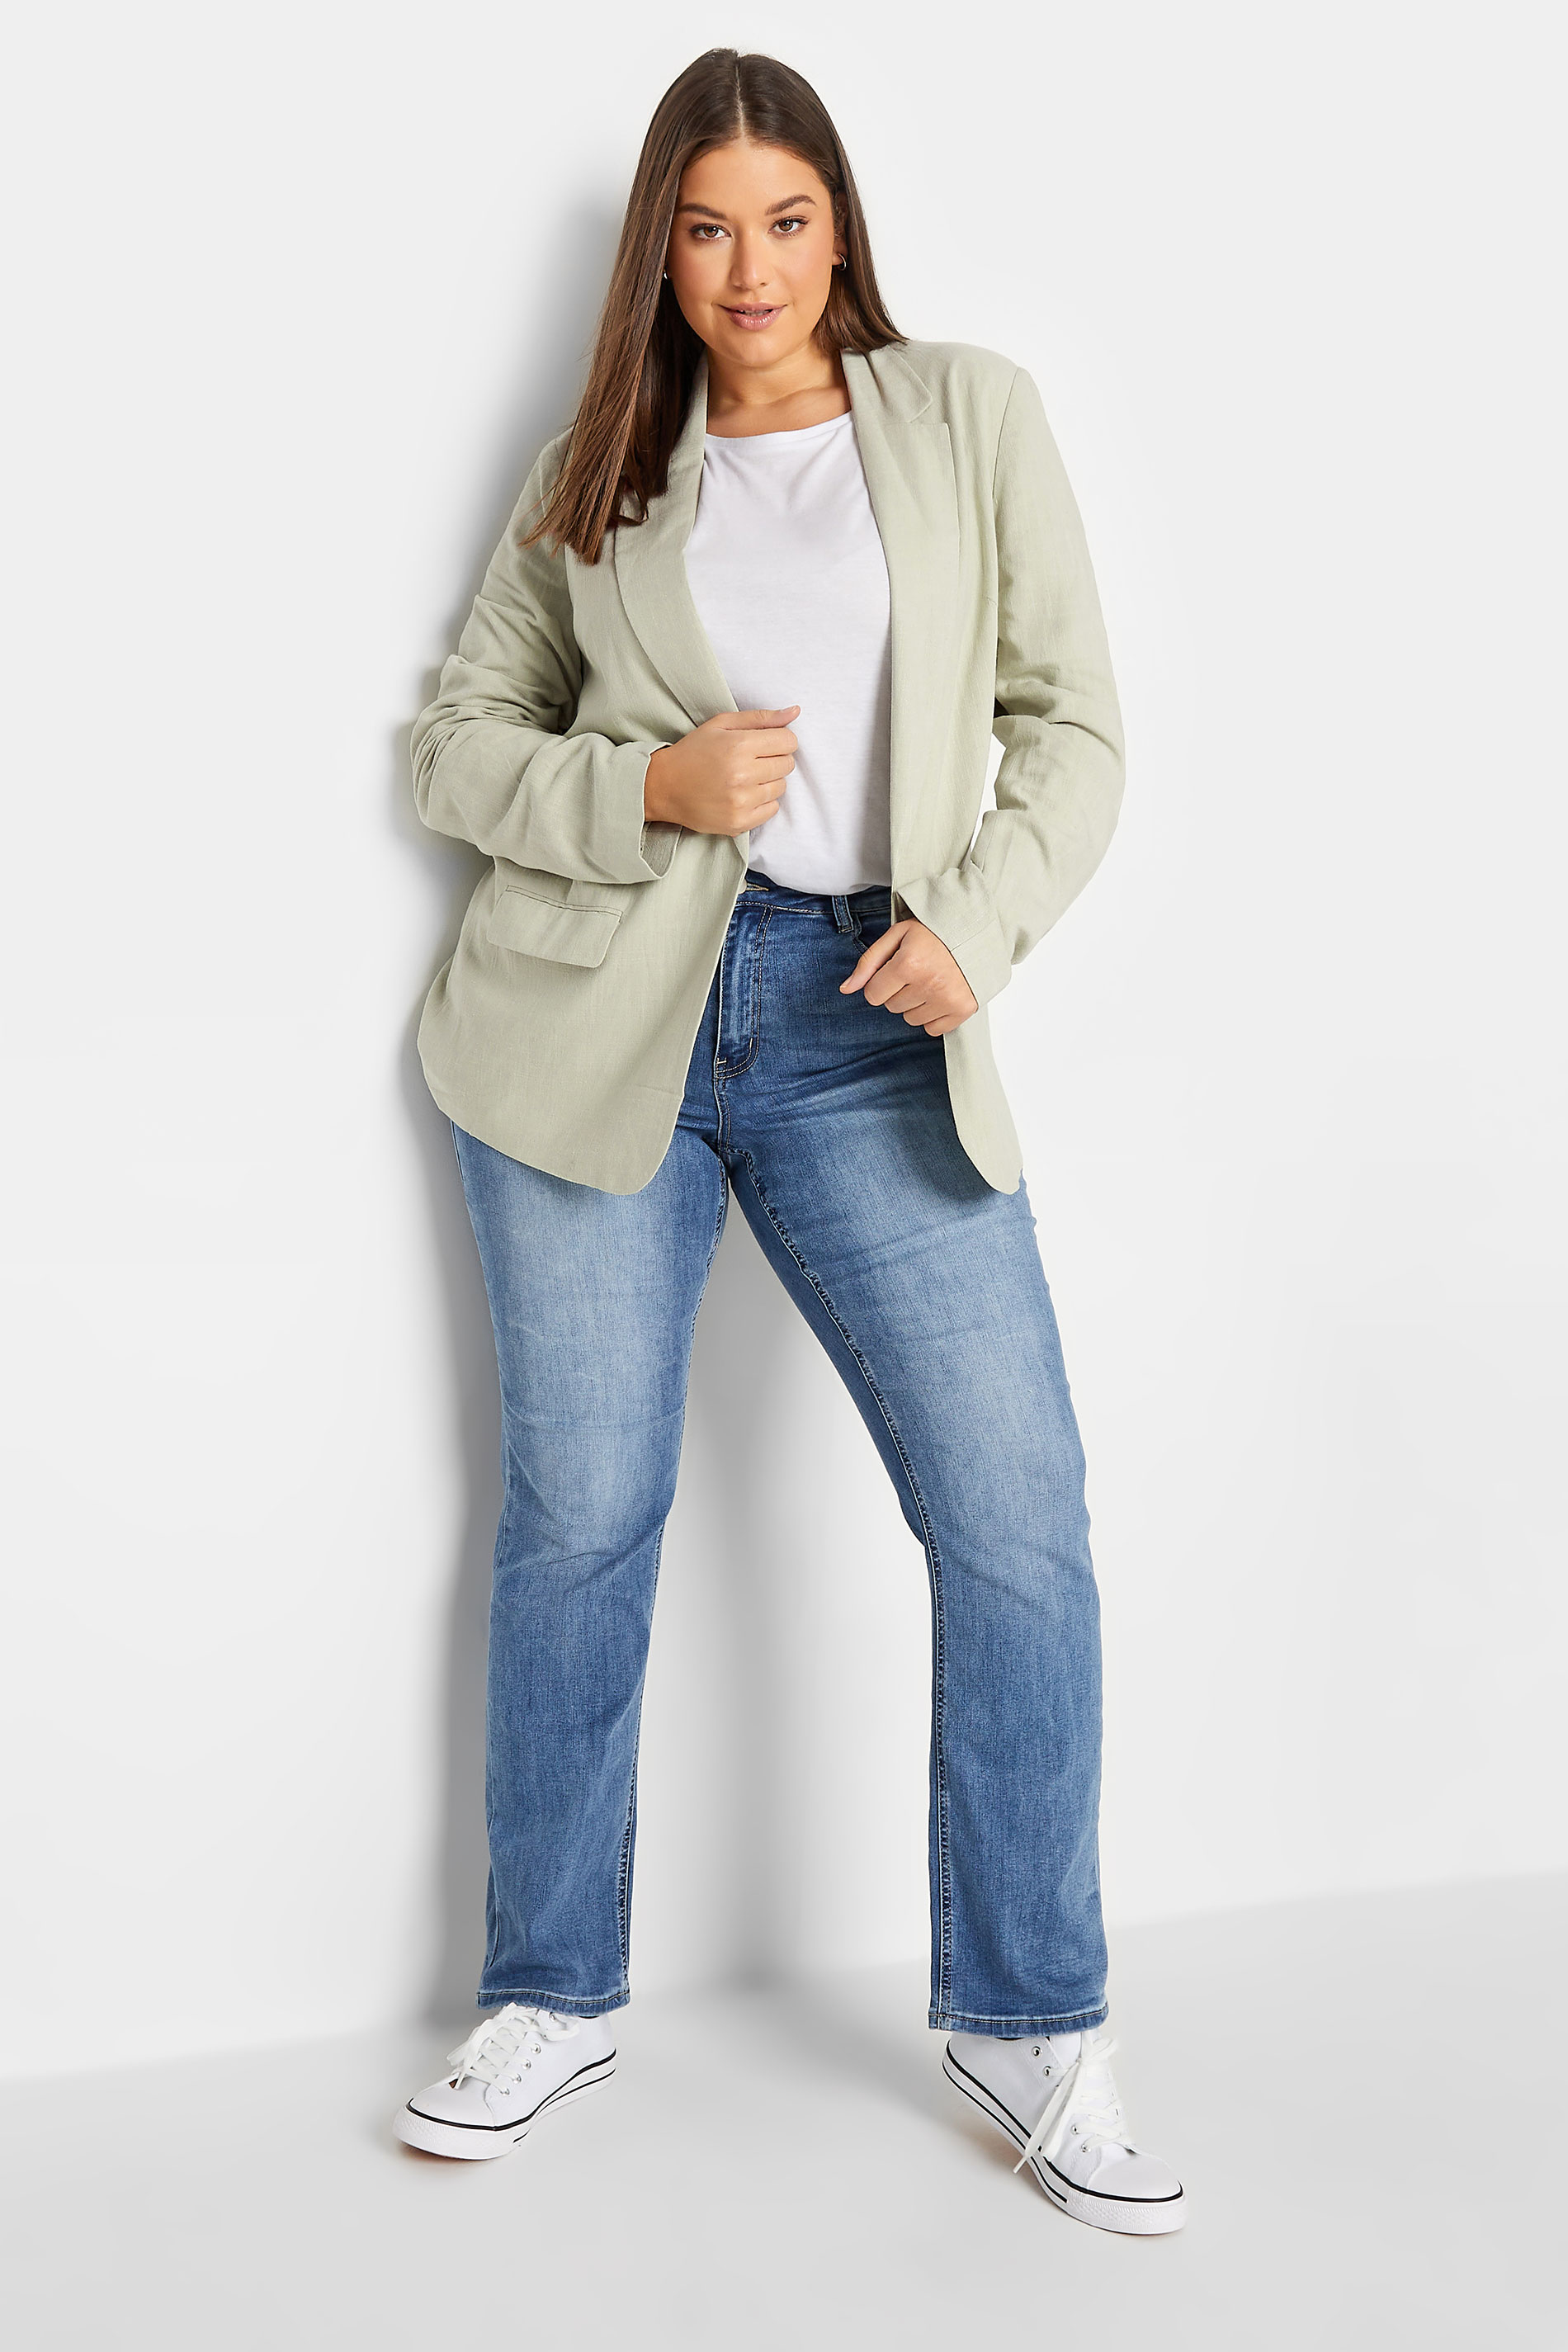 LTS Tall Women's Sage Green Linen Look Blazer | Long Tall Sally  2